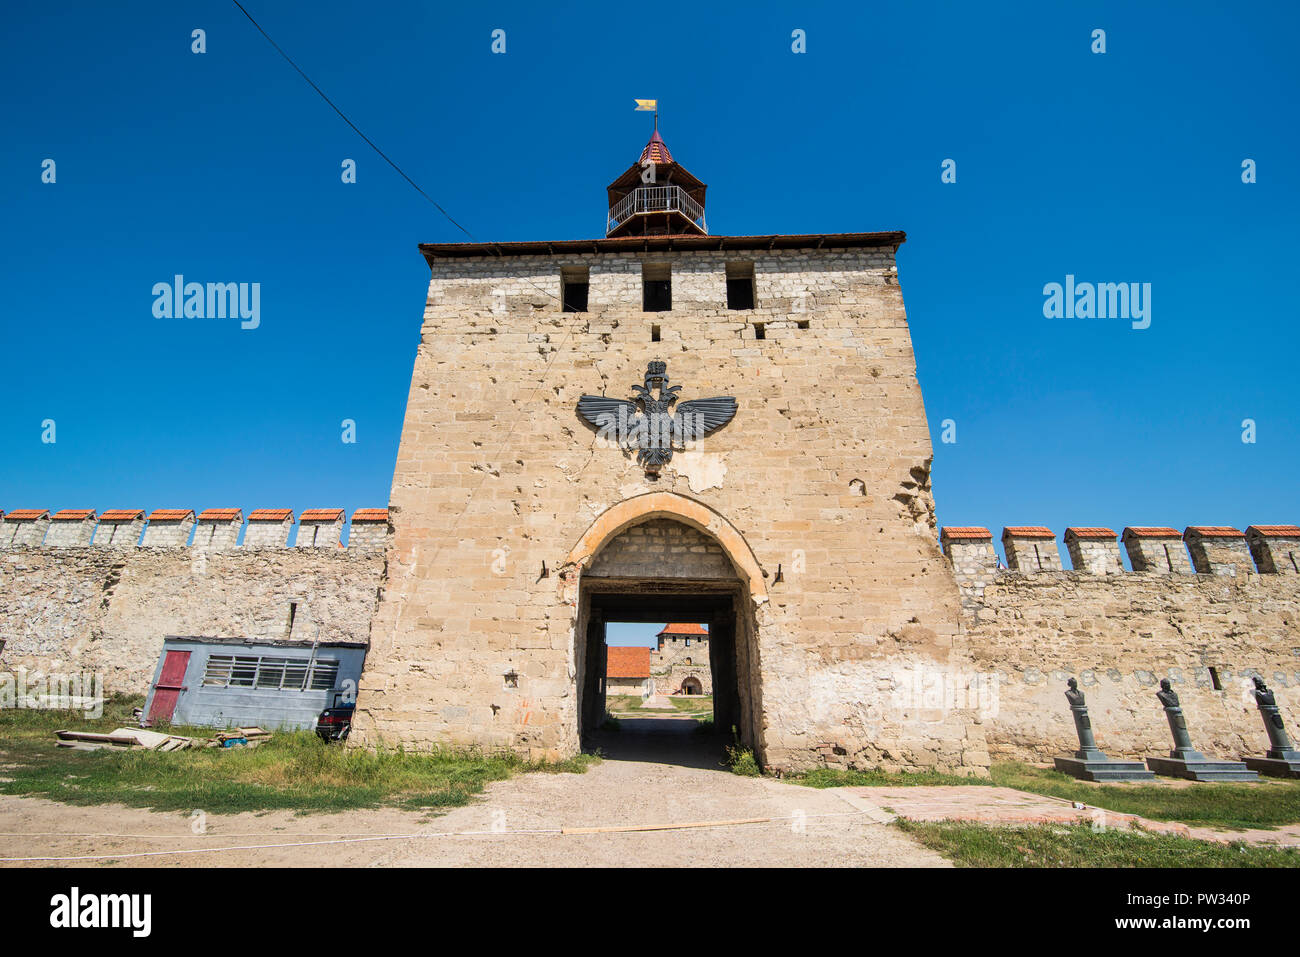 Puerta de entrada a la fortaleza, Bender Bender, República de Transnistria, Moldavia Foto de stock